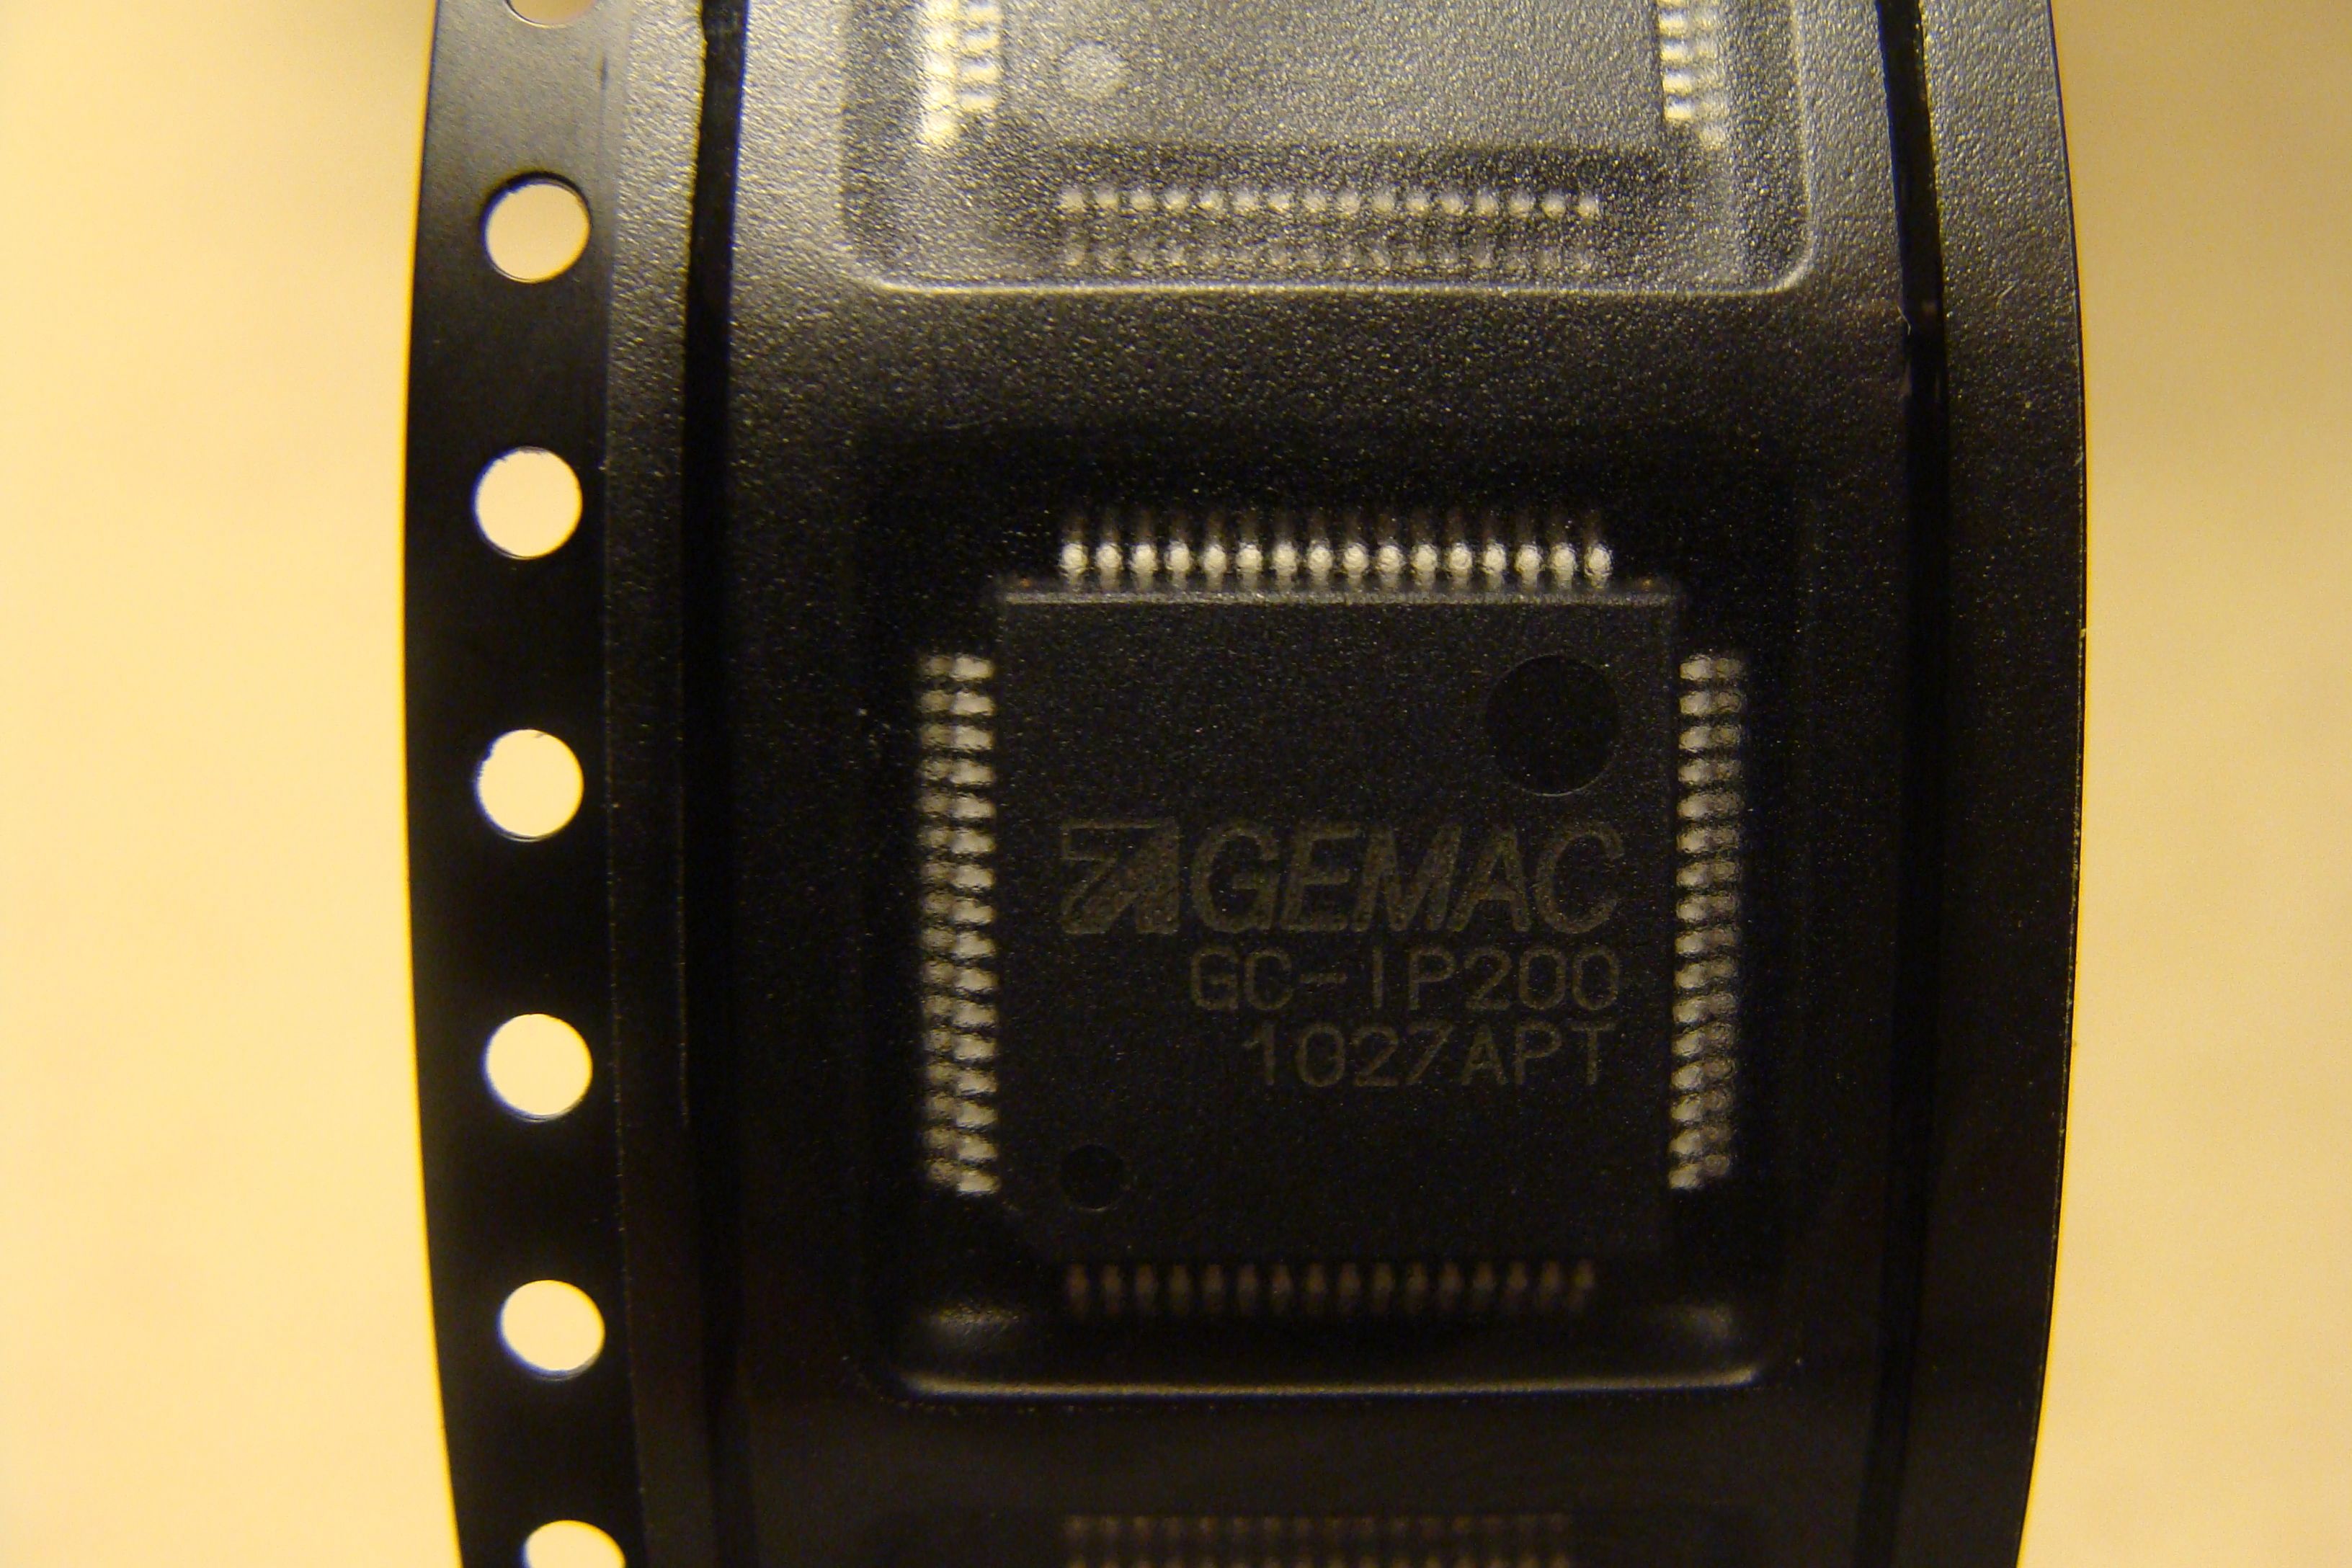 供应德国gemac细分芯片GC-IP200